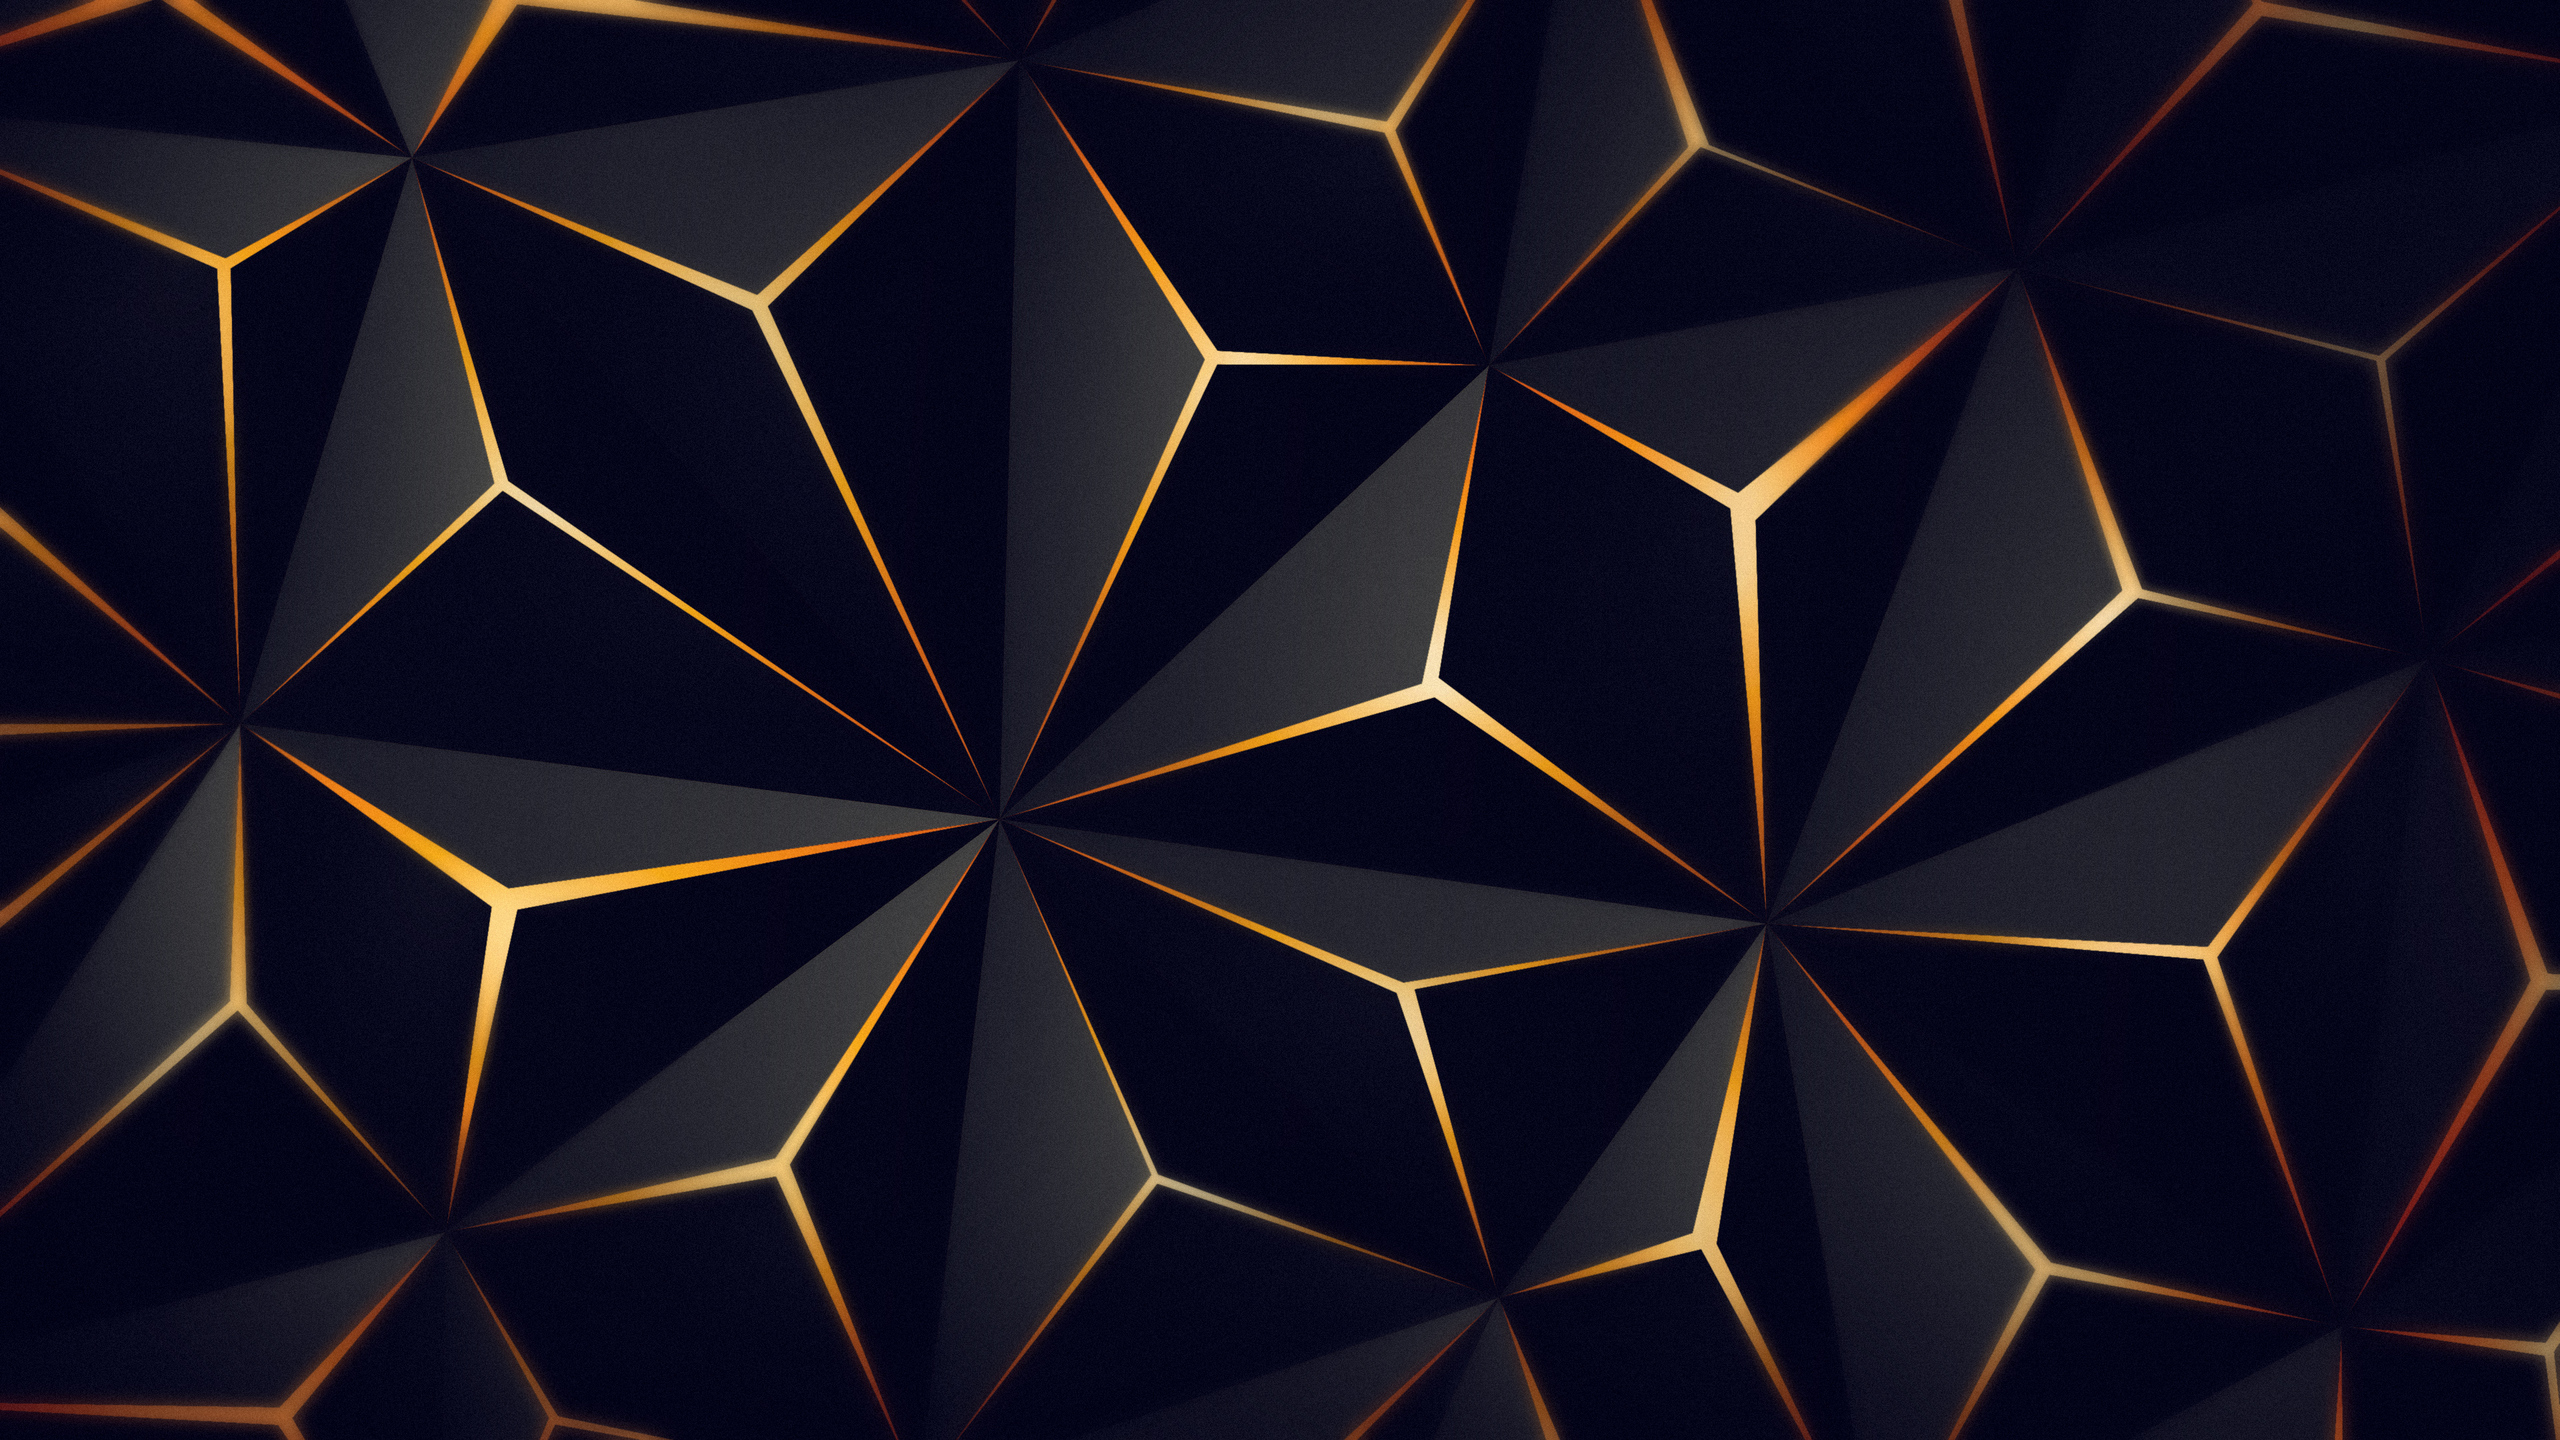 Với hình nền tam giác đen vàng, bạn sẽ được trải nghiệm một thiết kế độc đáo và mới lạ. Hình ảnh này đem đến cho bạn sự khác biệt và nổi bật với những mẫu hình nền thông thường. Hãy xem hình nền tam giác đen vàng để cảm nhận sự thú vị của nó.